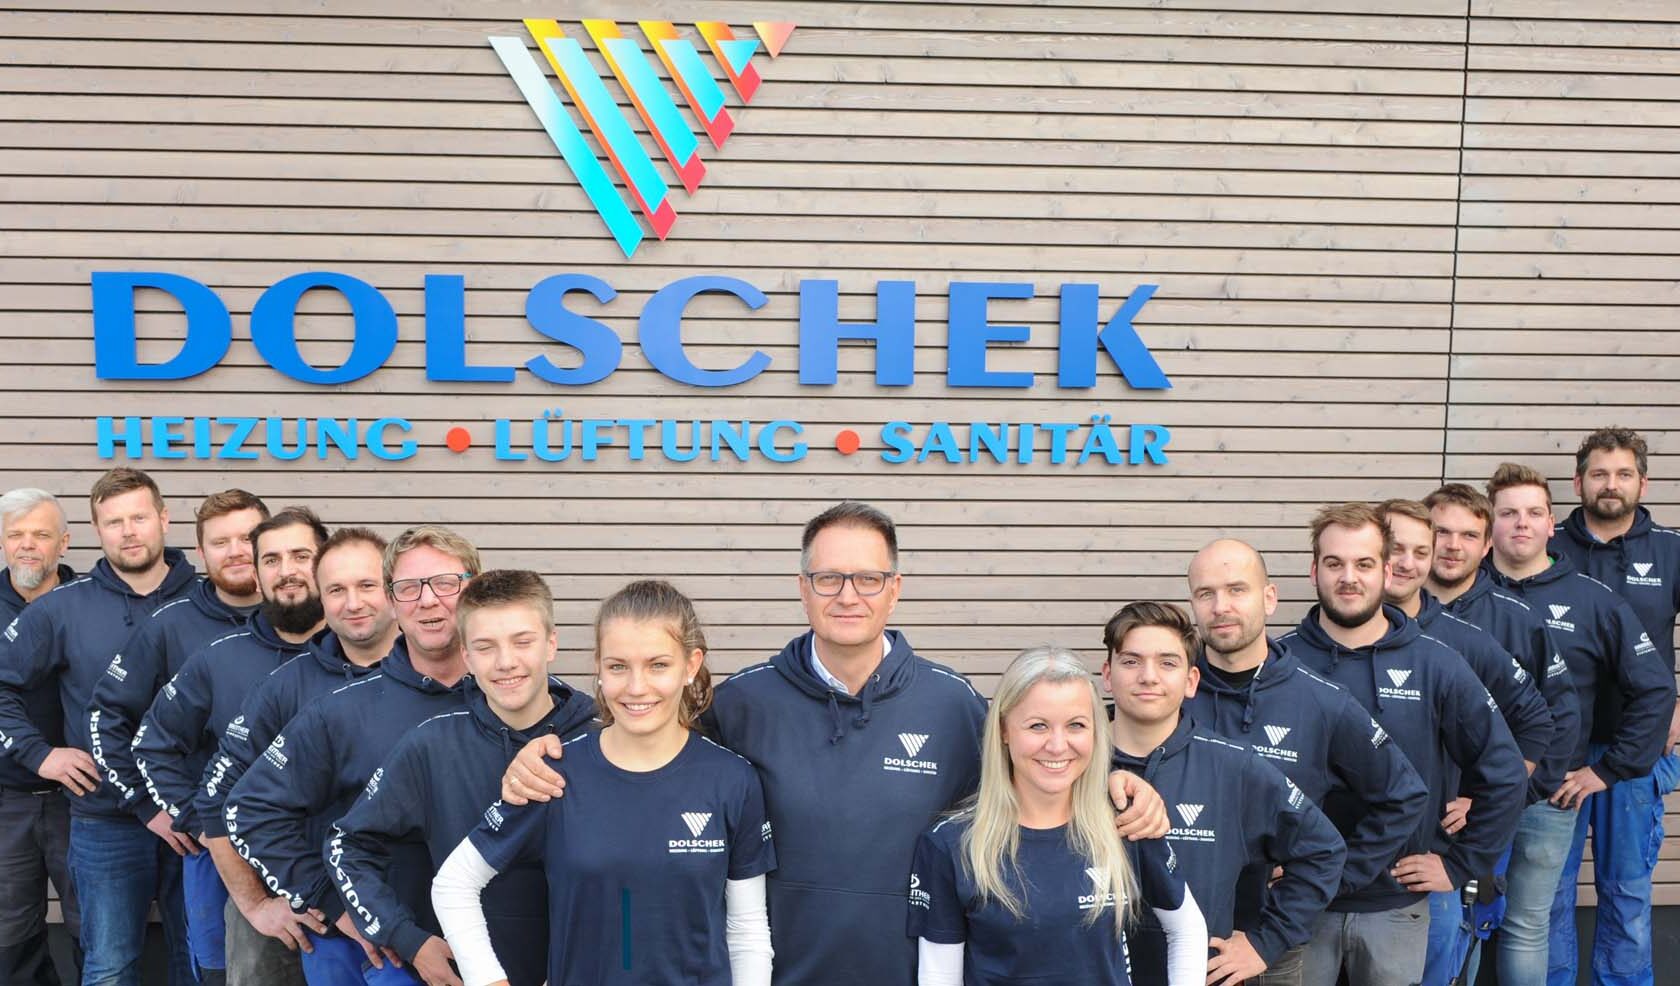 installateur dolschek team